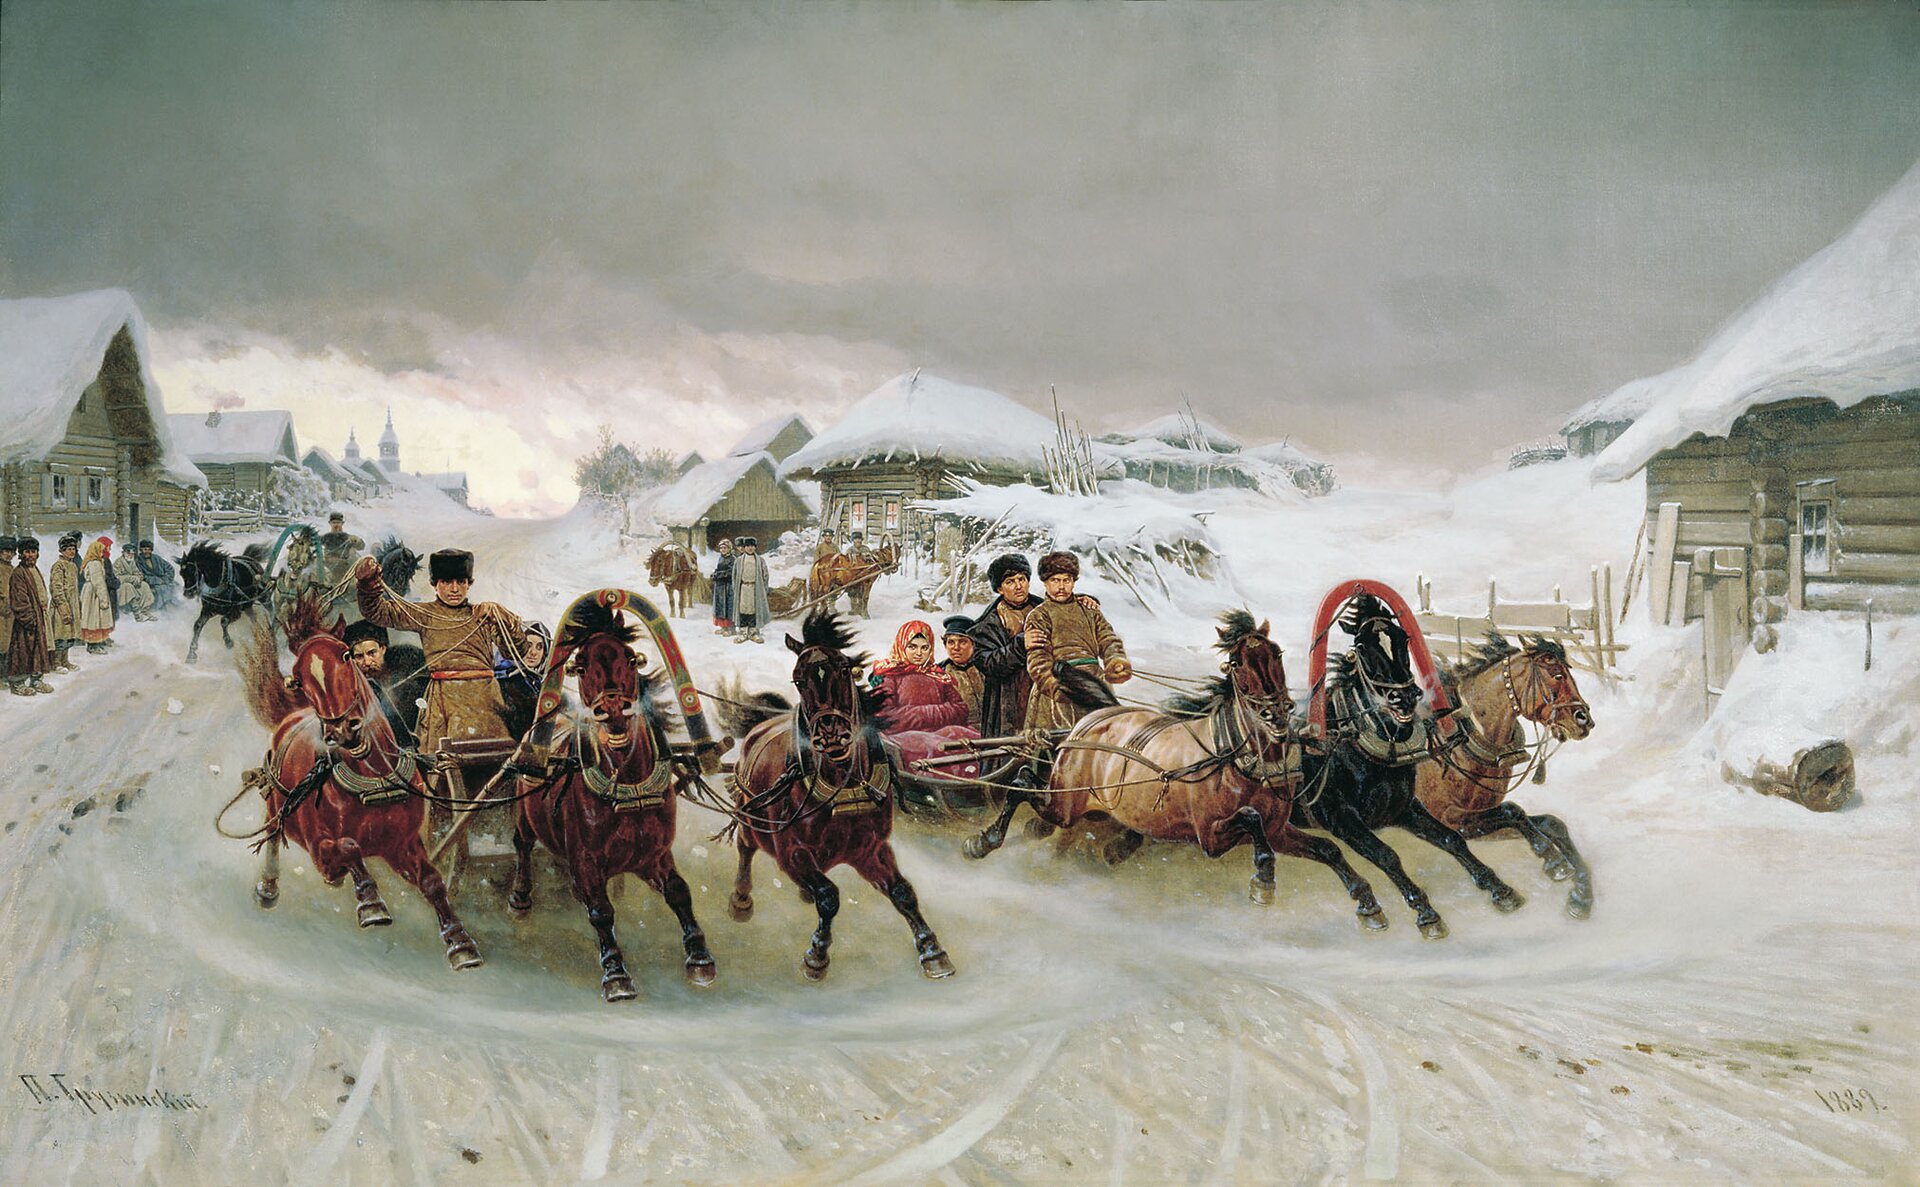 Ilustracja przedstawia zimowy krajobraz wsi. Dzieło ukazuje wyścigi zaprzęgów konnych podczas święta Maslenica. Tło stanowią wiejskie chałupy z zaśnieżonymi dachami.